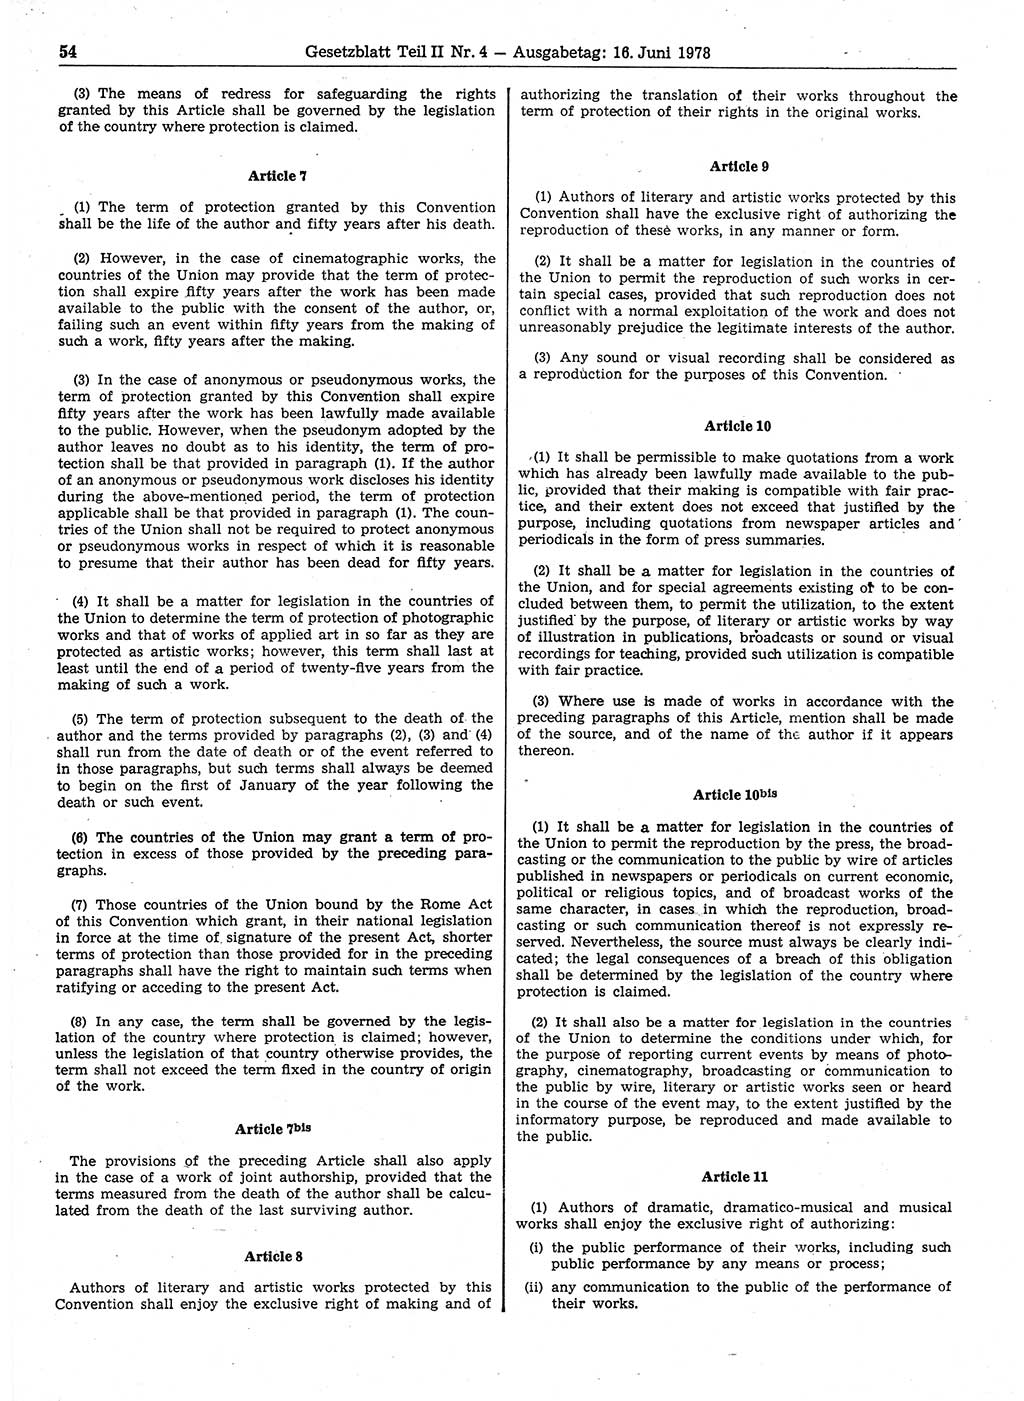 Gesetzblatt (GBl.) der Deutschen Demokratischen Republik (DDR) Teil ⅠⅠ 1978, Seite 54 (GBl. DDR ⅠⅠ 1978, S. 54)